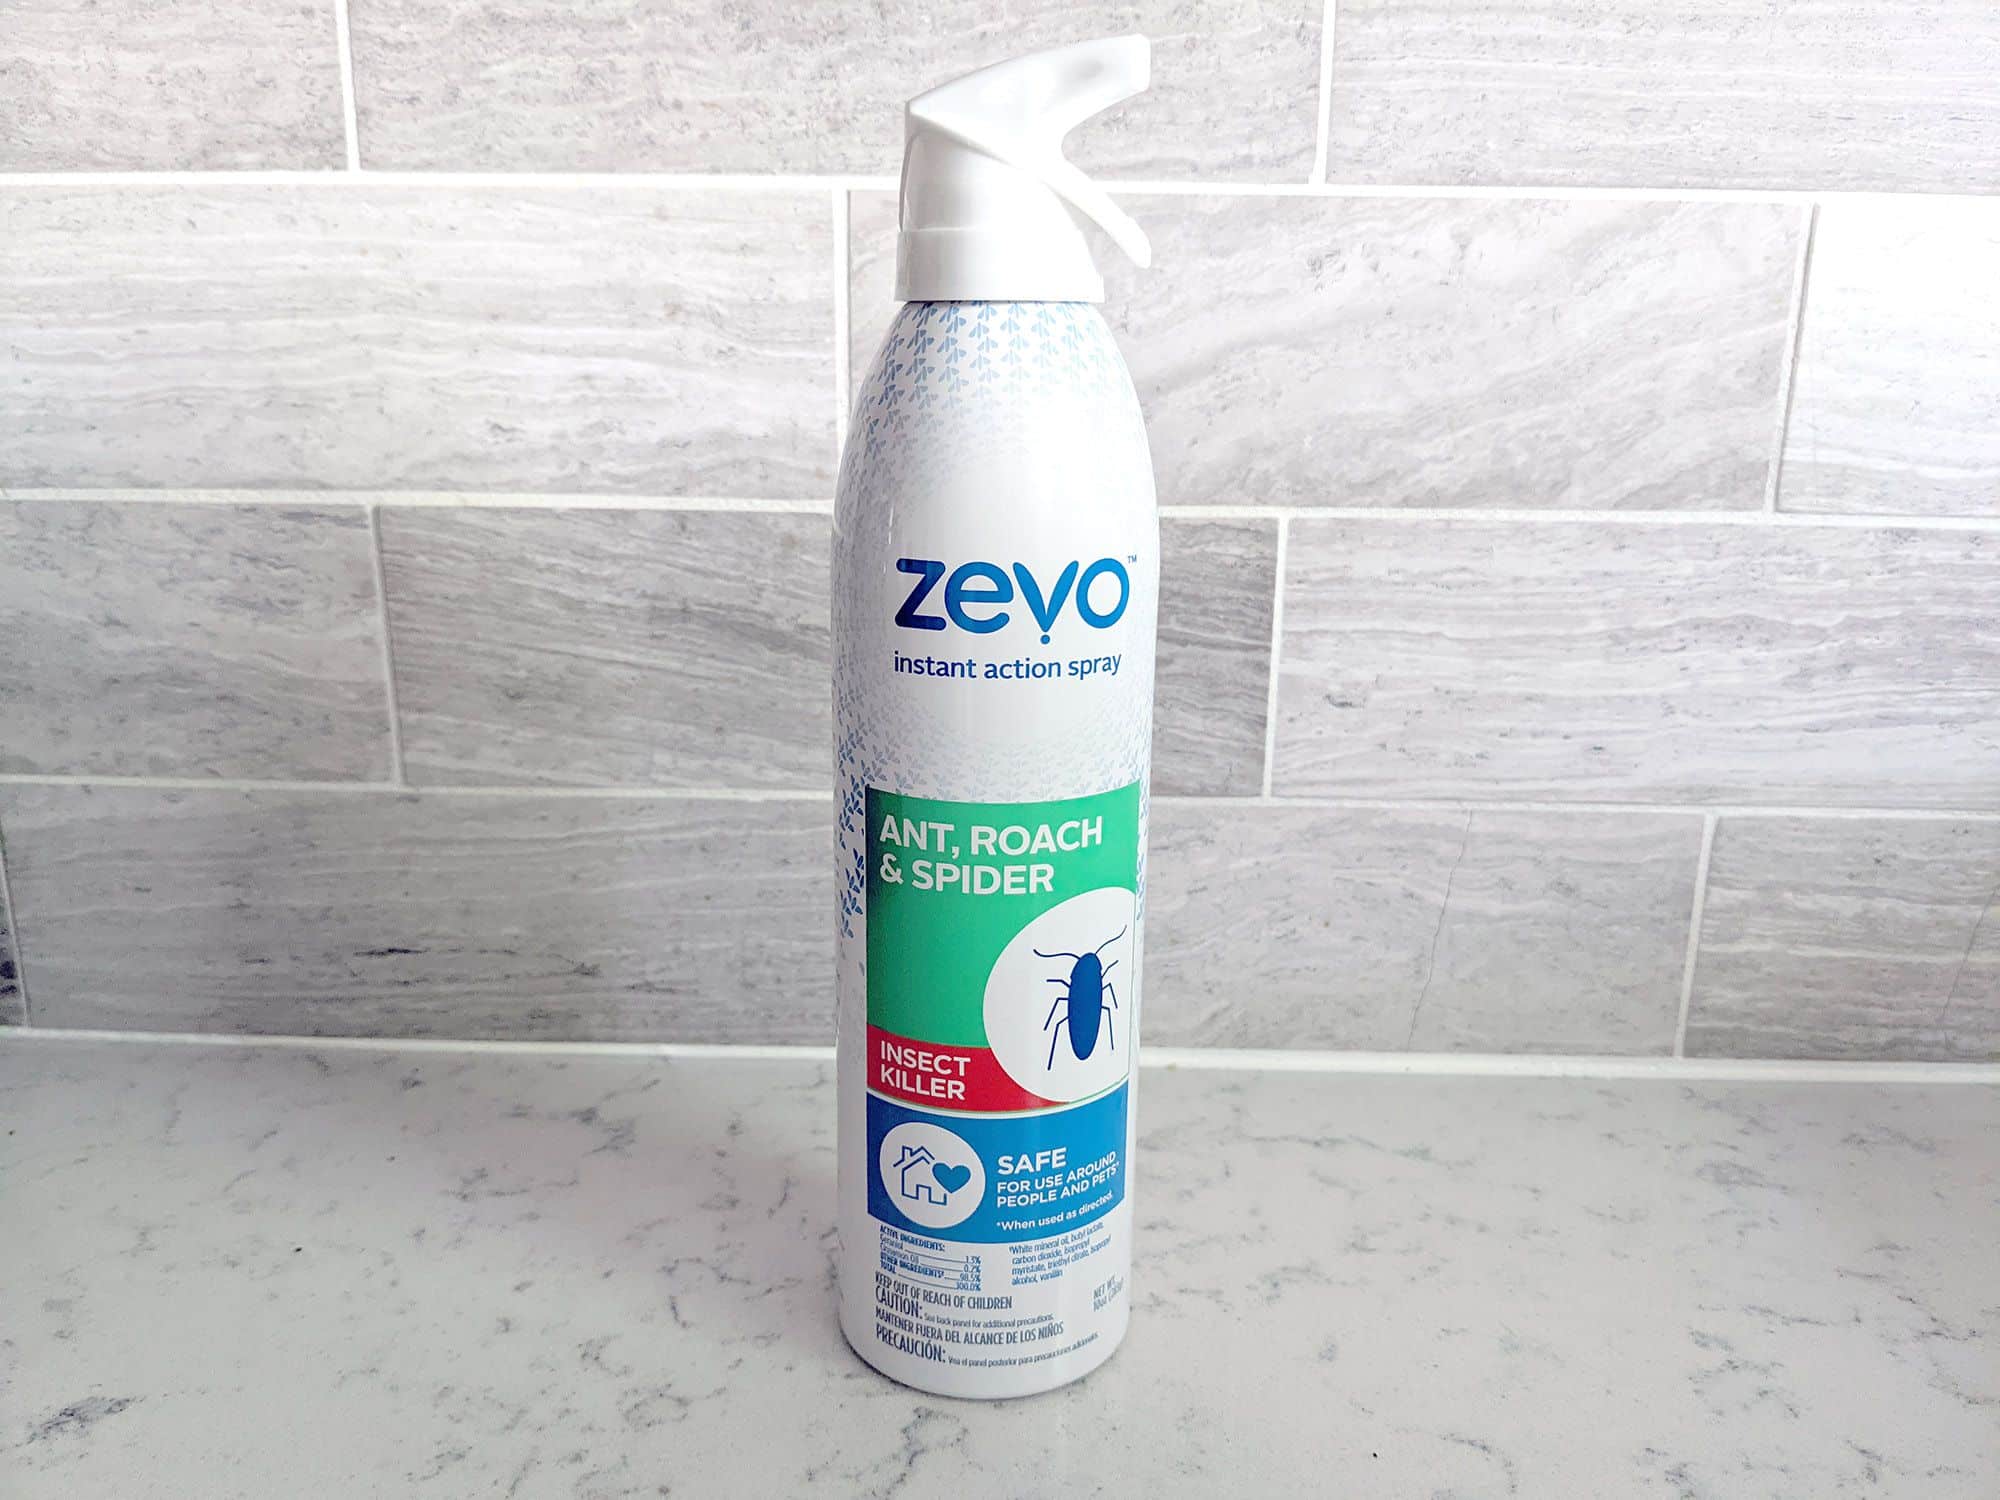 I bought Zevo Bug Spray